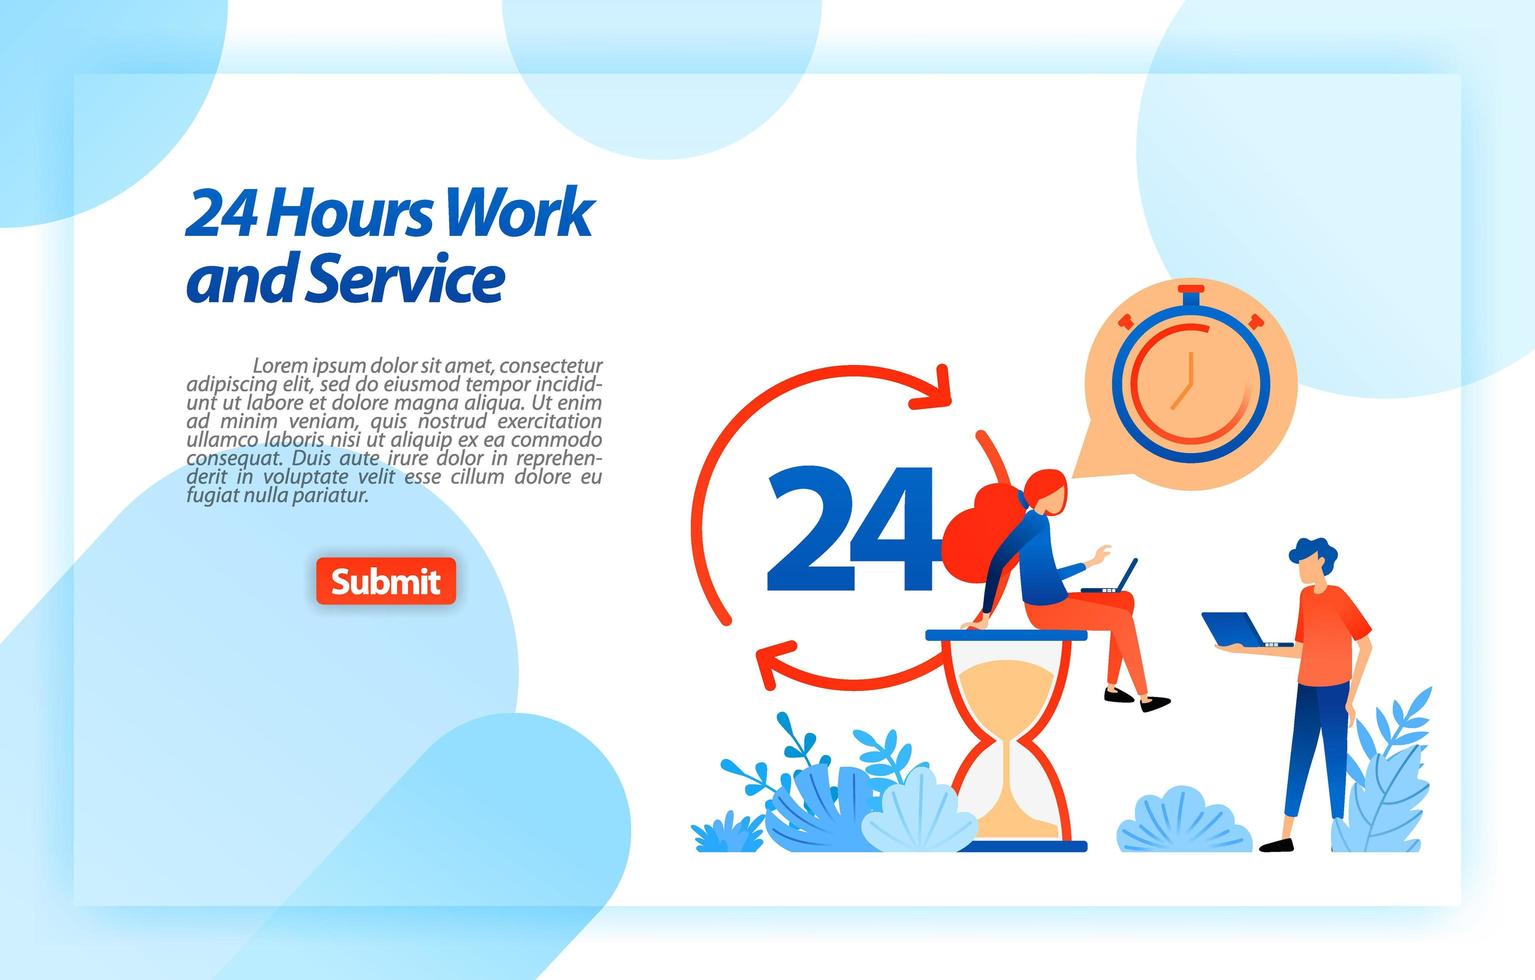 24 uur per dag werkende klantenservice om gebruikers te ondersteunen bij het verkrijgen van betere informatie en services, altijd en overal. vector illustratie concept voor bestemmingspagina, ui ux, website, mobiele app, poster, advertenties